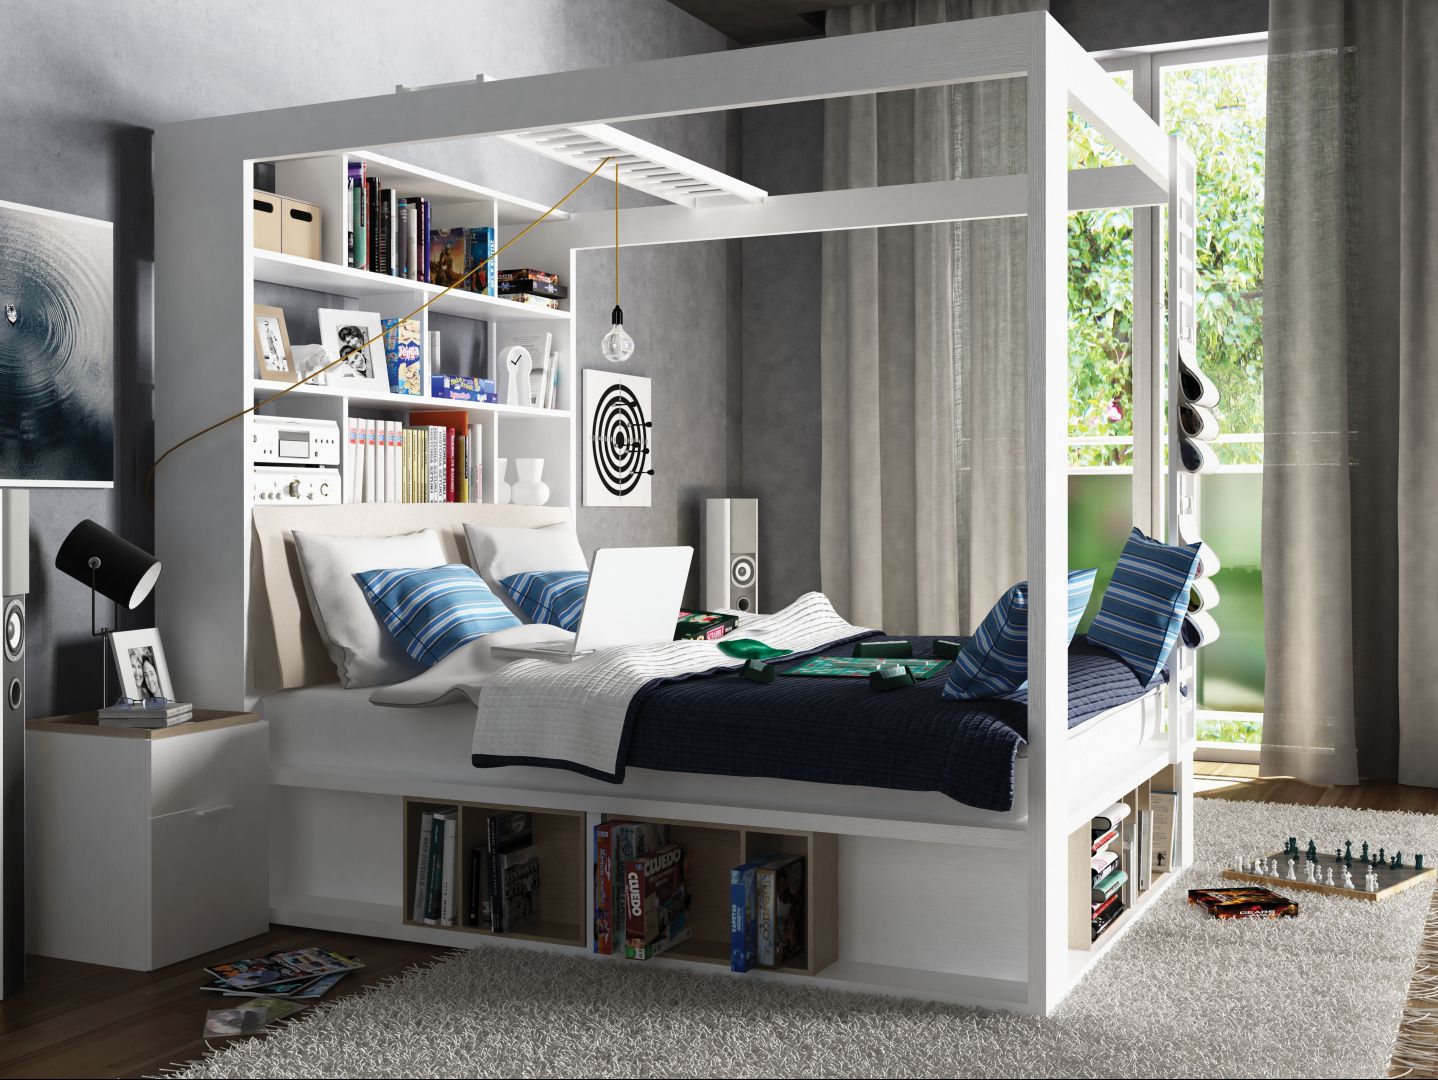 Łóżko 4You to kompleksowe wyposażenie wnętrza sypialni. Świetnie sprawdzi się w niewielkim wnęrzu. Fot. Vox